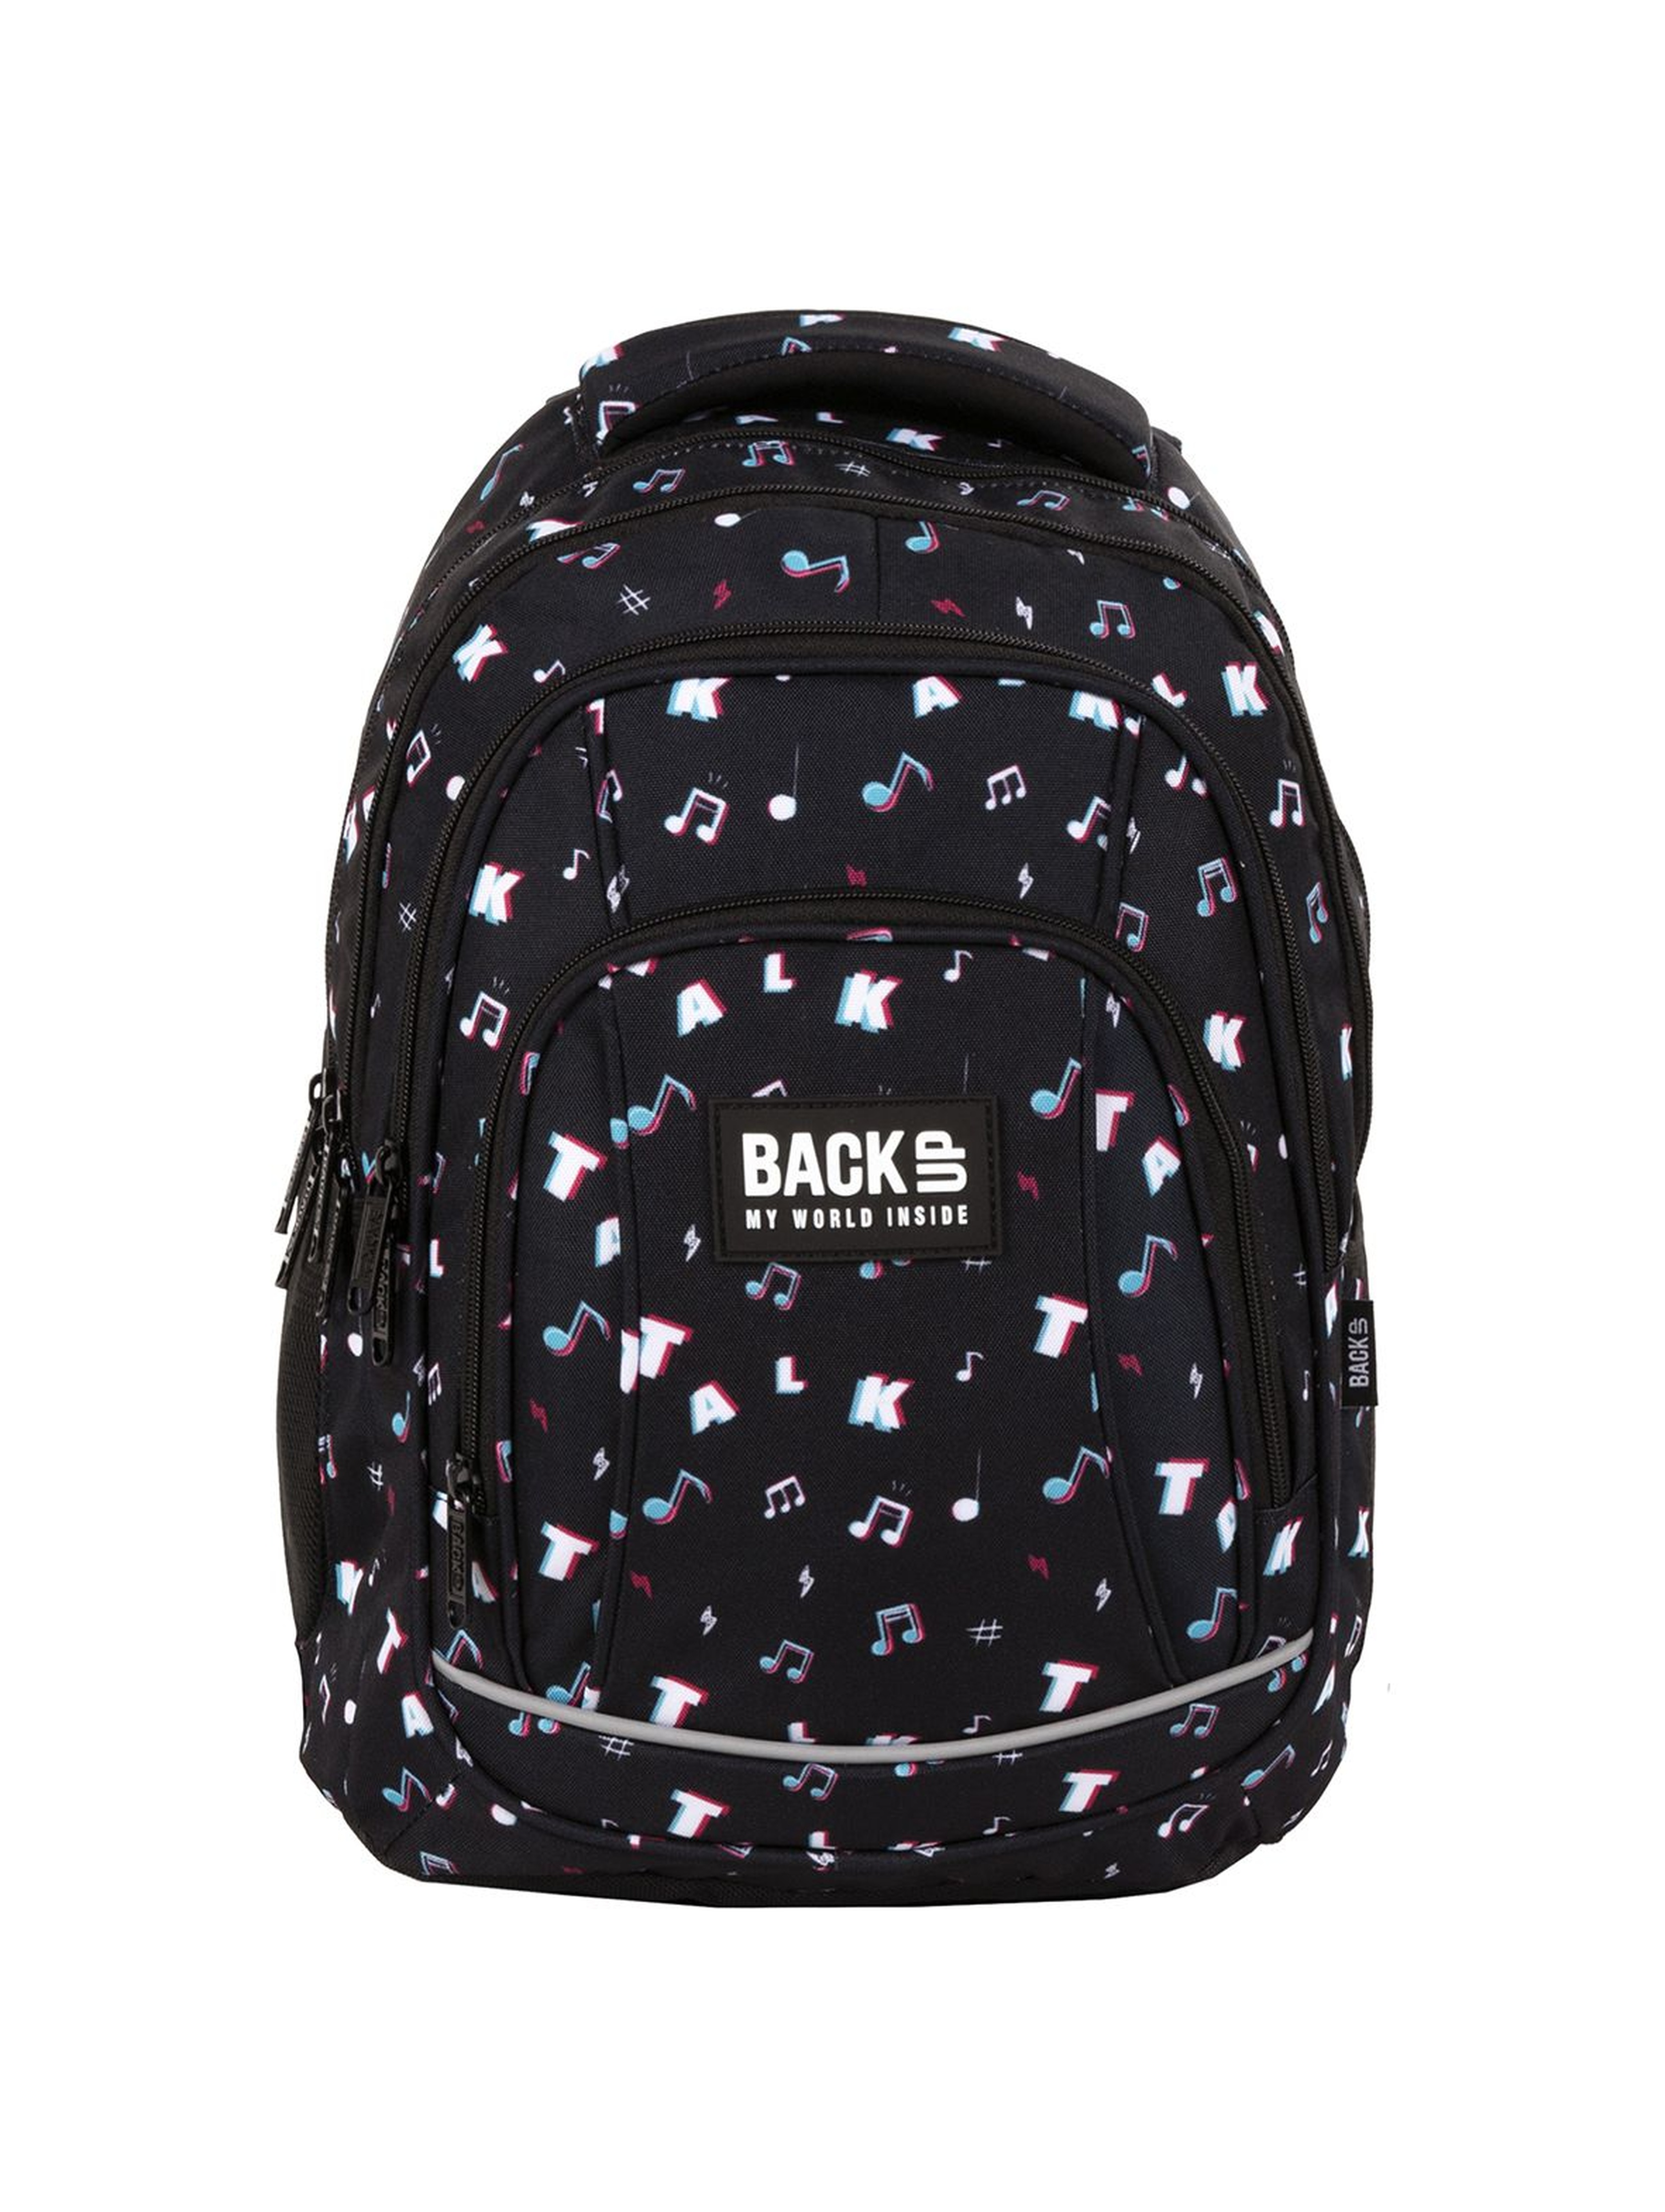 Plecak BackUp chłopięcy czarny z kolorowym nadrukiem